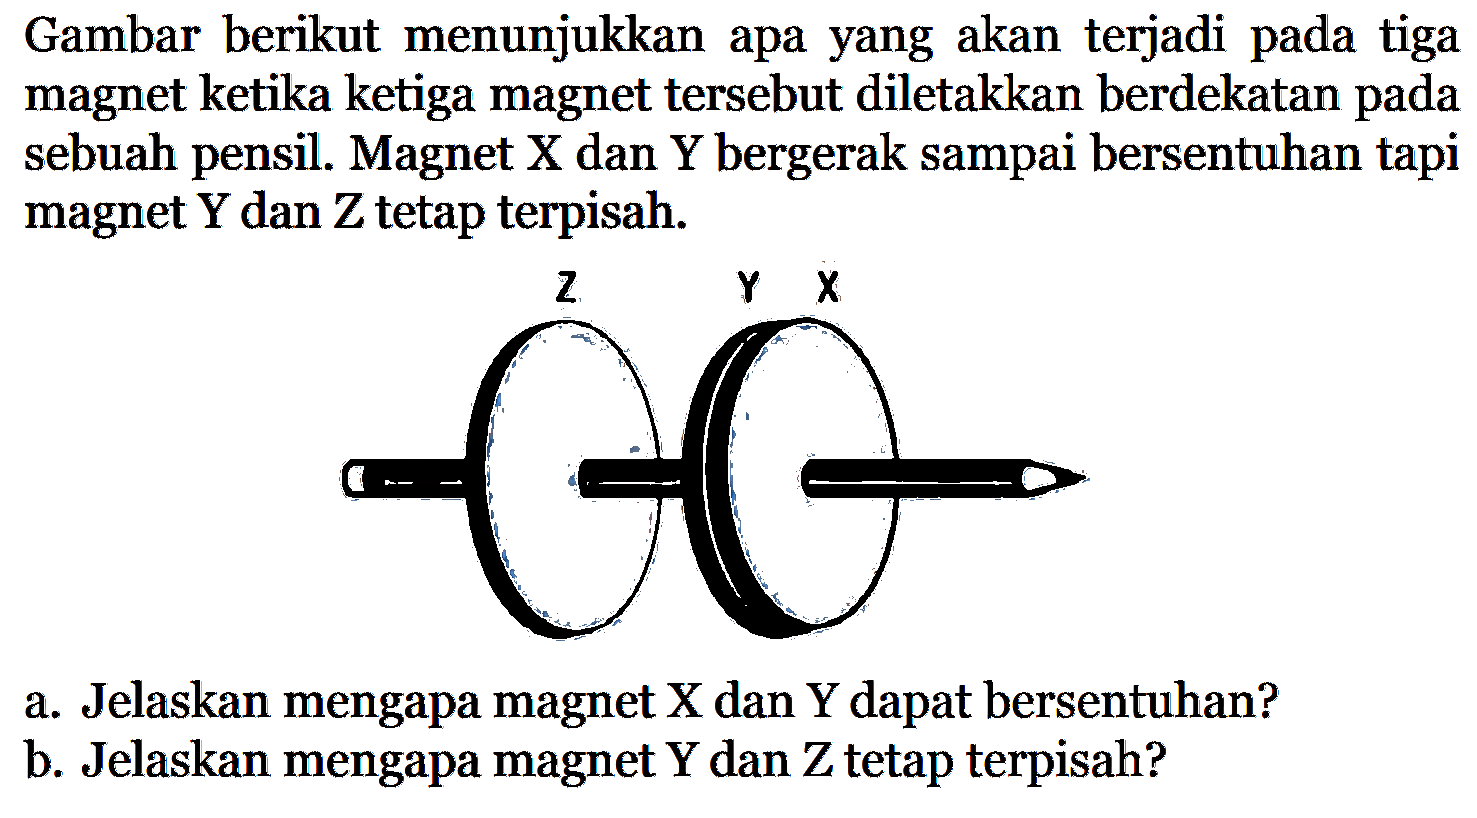 Gambar berikut menunjukkan apa yang akan terjadi pada tiga magnet ketika ketiga magnet tersebut diletakkan berdekatan pada sebuah pensil. Magnet X dan Y bergerak sampai bersentuhan tapi magnet Y dan Z tetap terpisah. Z Y Xa. Jelaskan mengapa magnet X dan Y dapat bersentuhan?b. Jelaskan mengapa magnet Y dan Z tetap terpisah?